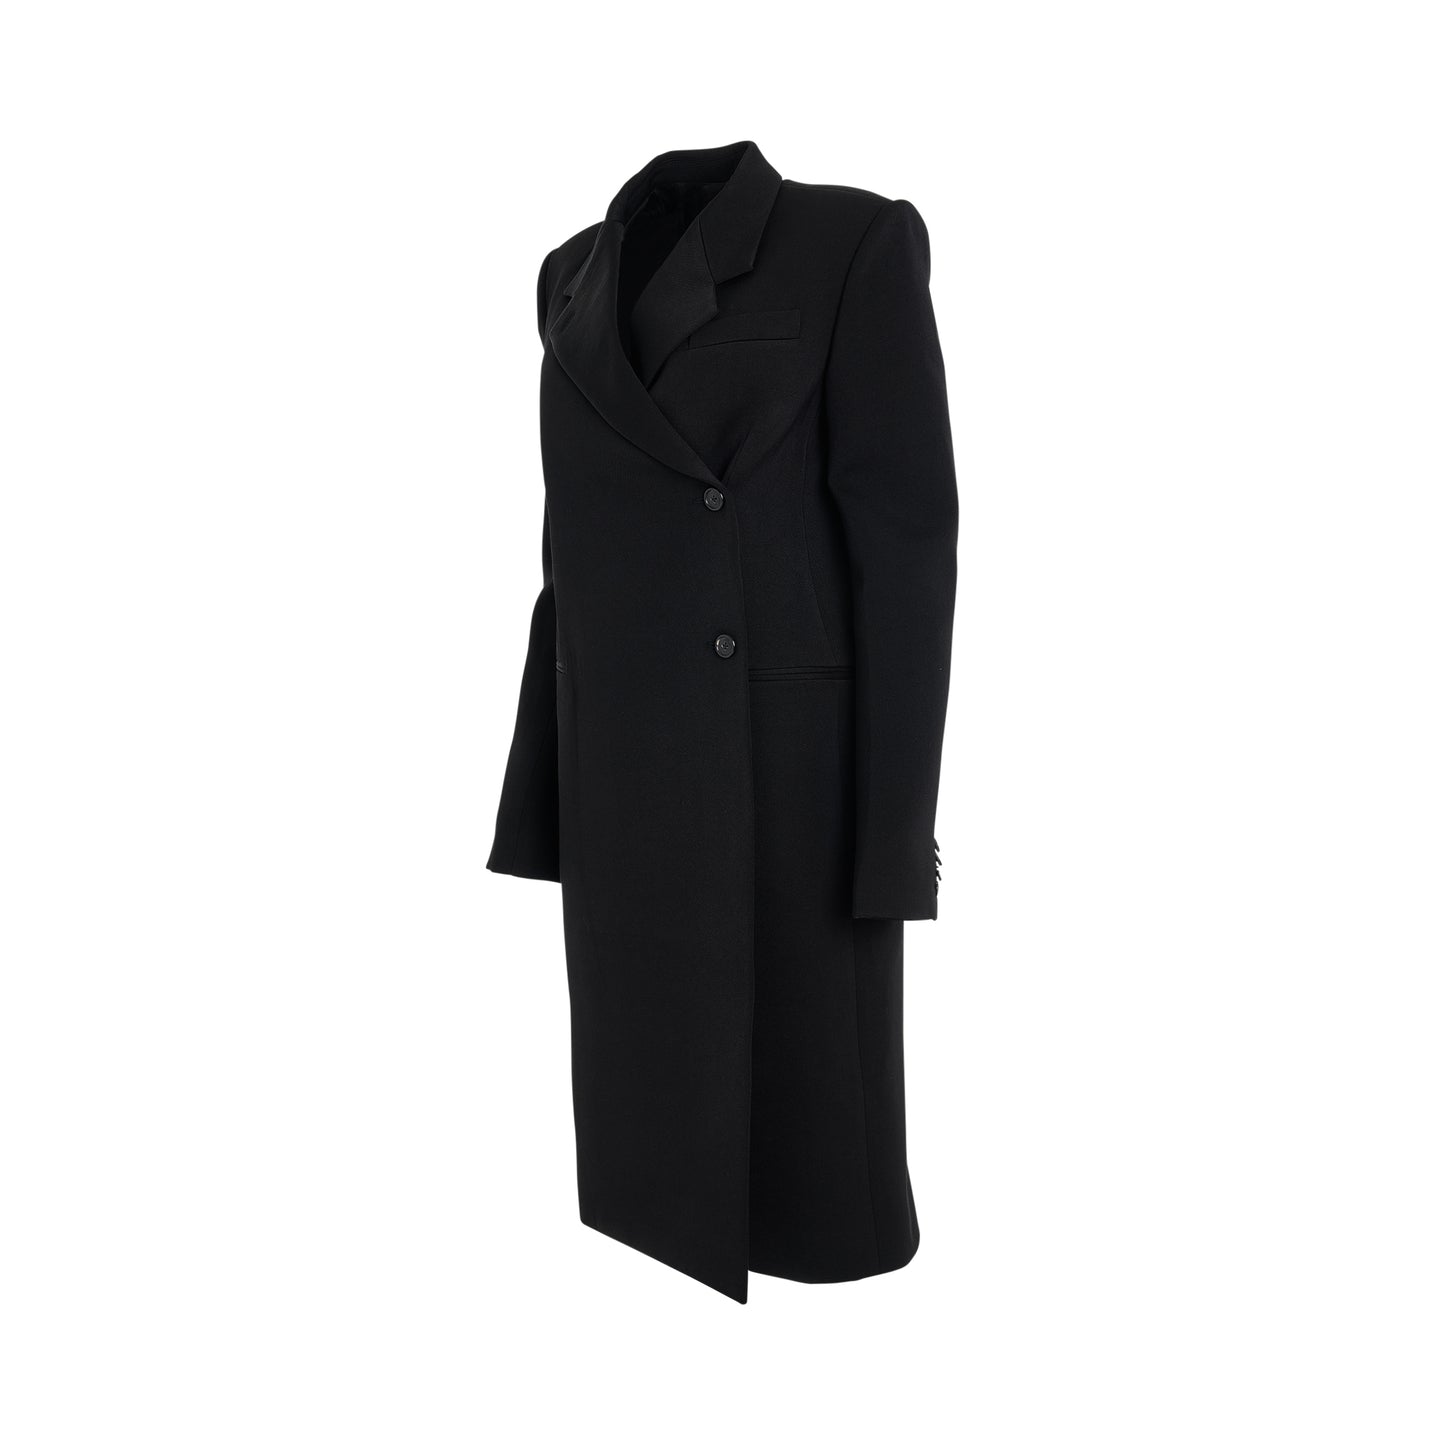 Kento Coat in Black